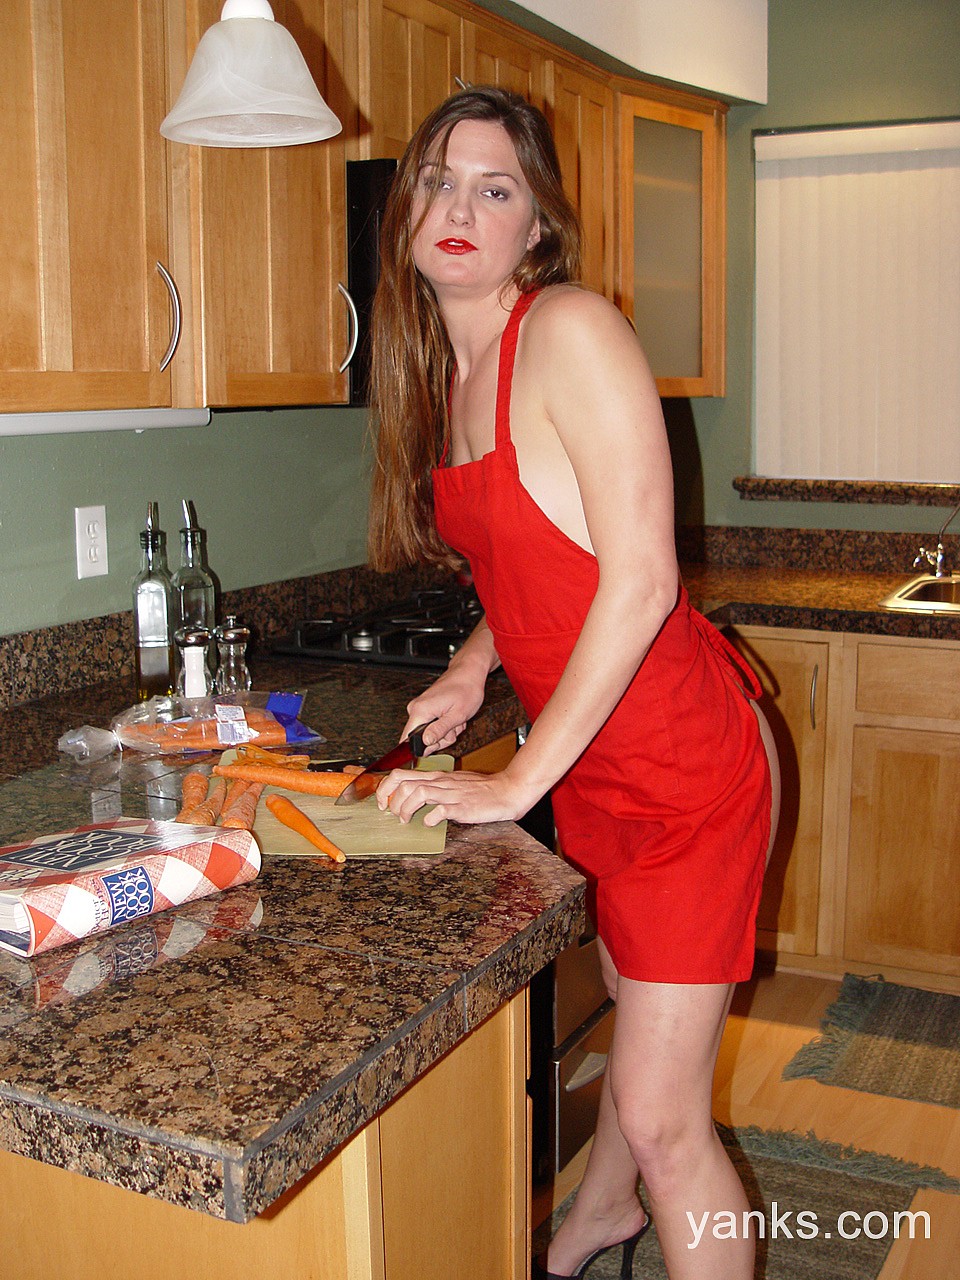 Brunette chick Jessica flashes her natural tits and masturbates in a kitchen foto porno #426996239 | Yanks Pics, Jessica, Dildo, porno mobile